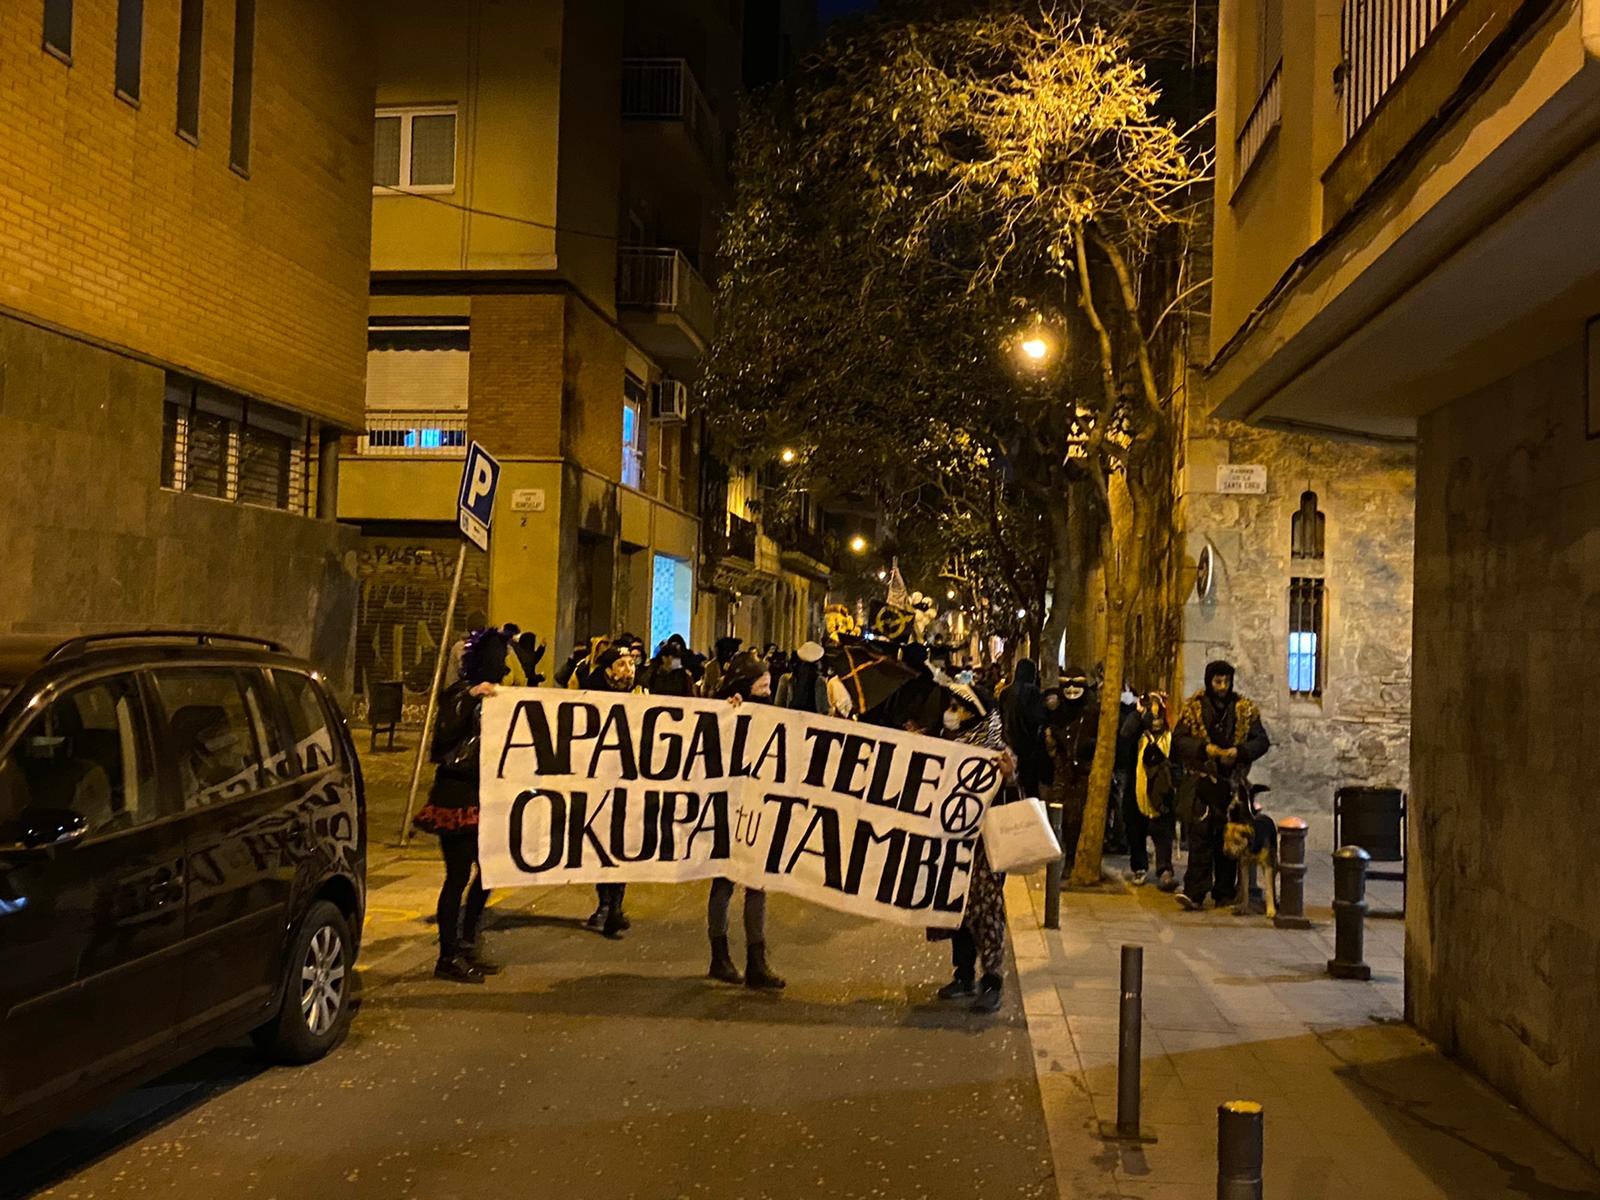 Rua okupa sense mascaretes als carrers de Gràcia